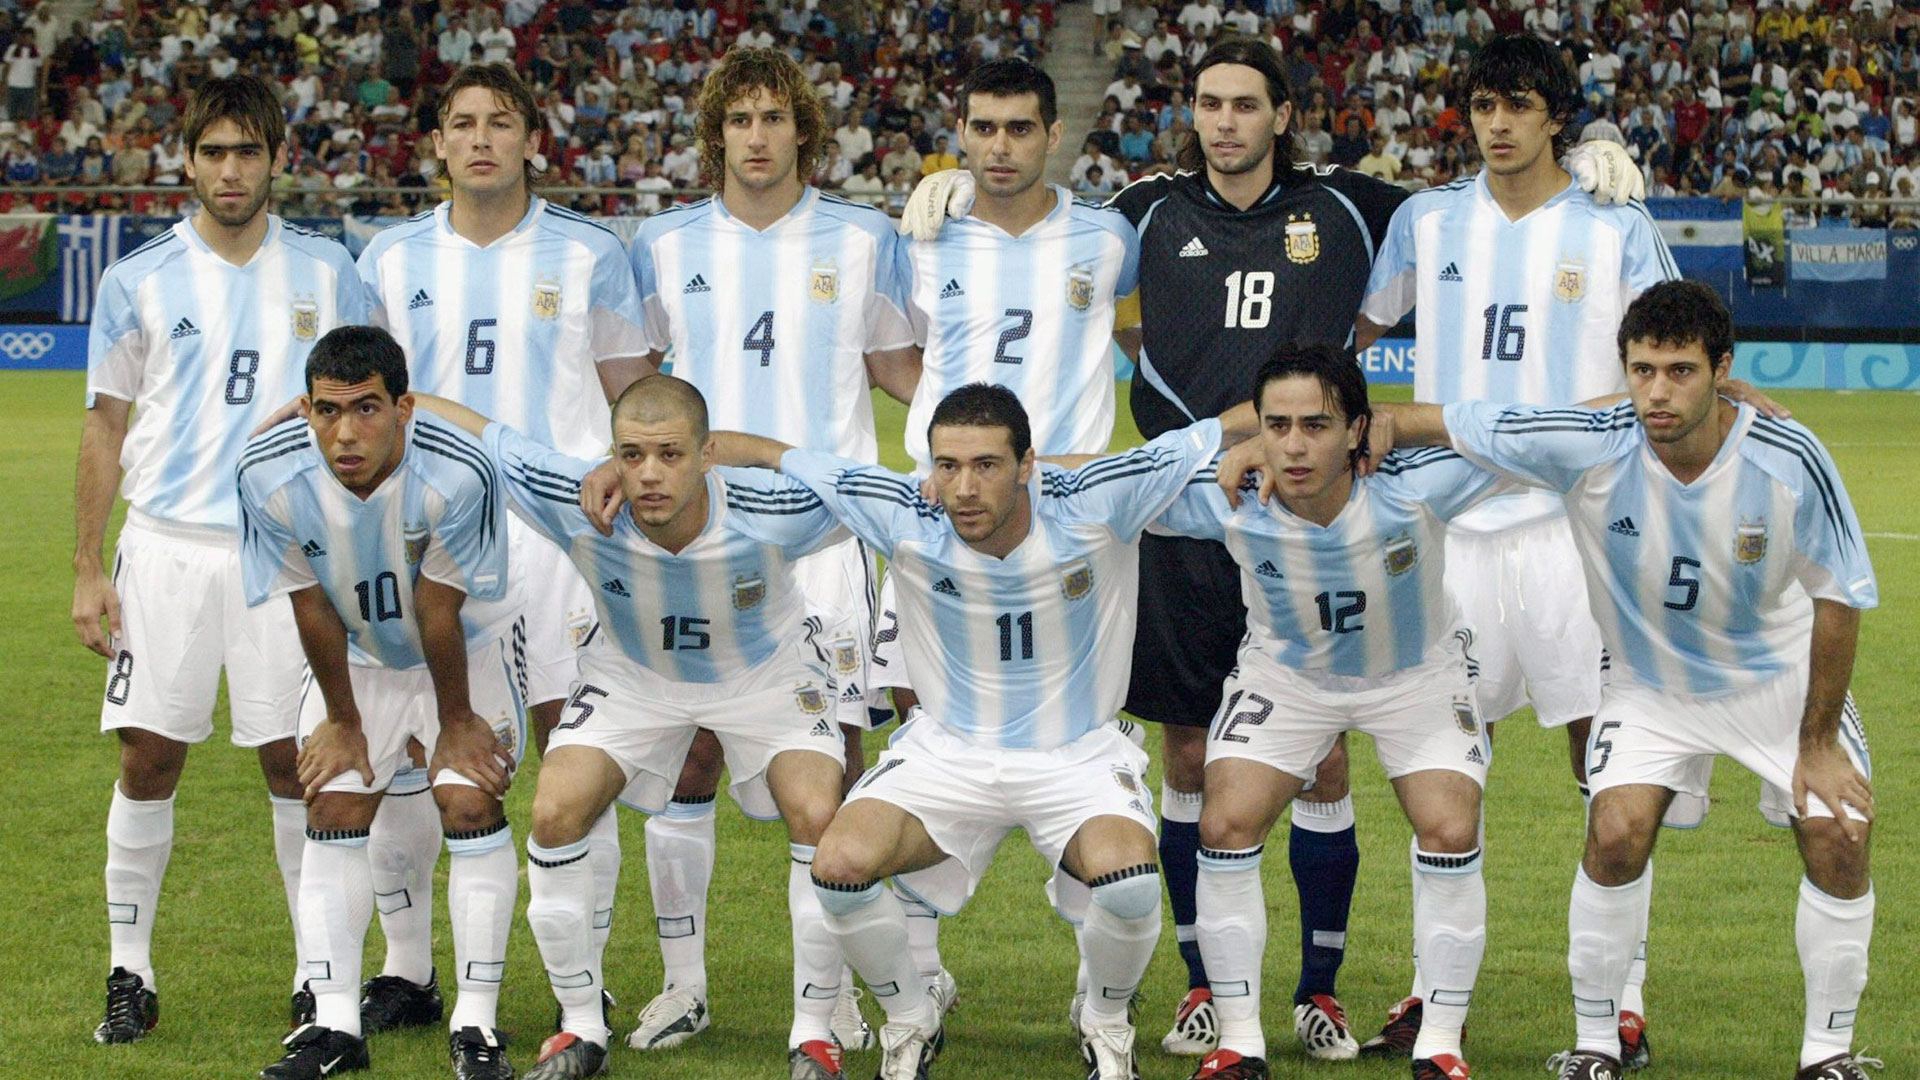 La camiseta de la selección argentina con las dos estrellas en el pecho, algo que lució de manera formal por primera vez Argentina en los Juegos Olímpicos de Atenas 2004 (Foto: Getty Images)